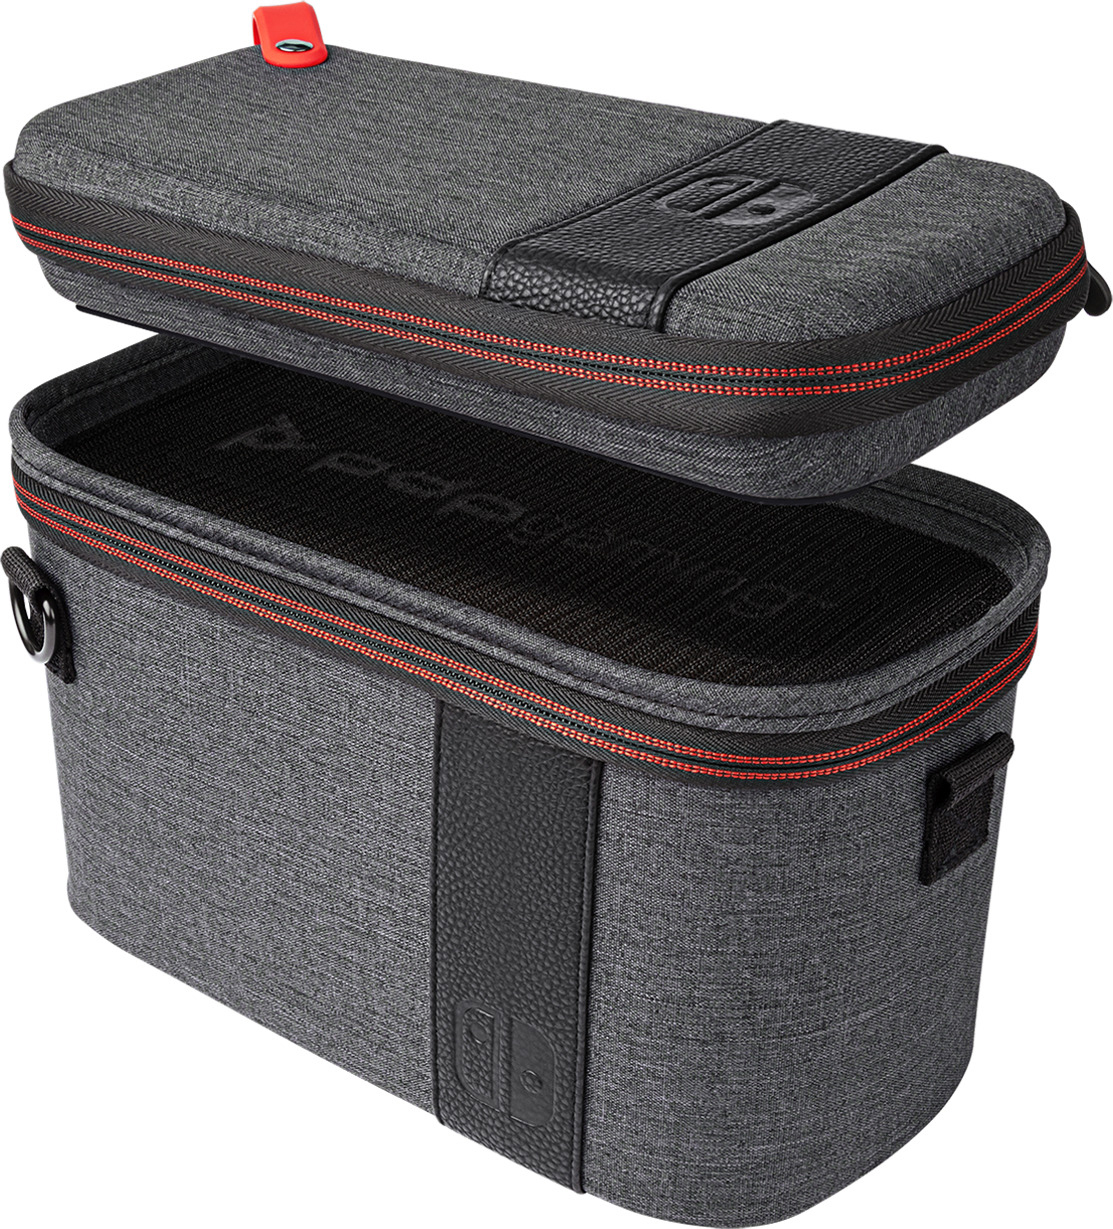 für für Switch, grau LLC Pull-N-Go Nintendo PDP Nintendo Switch, Grau Elite Konsolen-Tasche Tasche